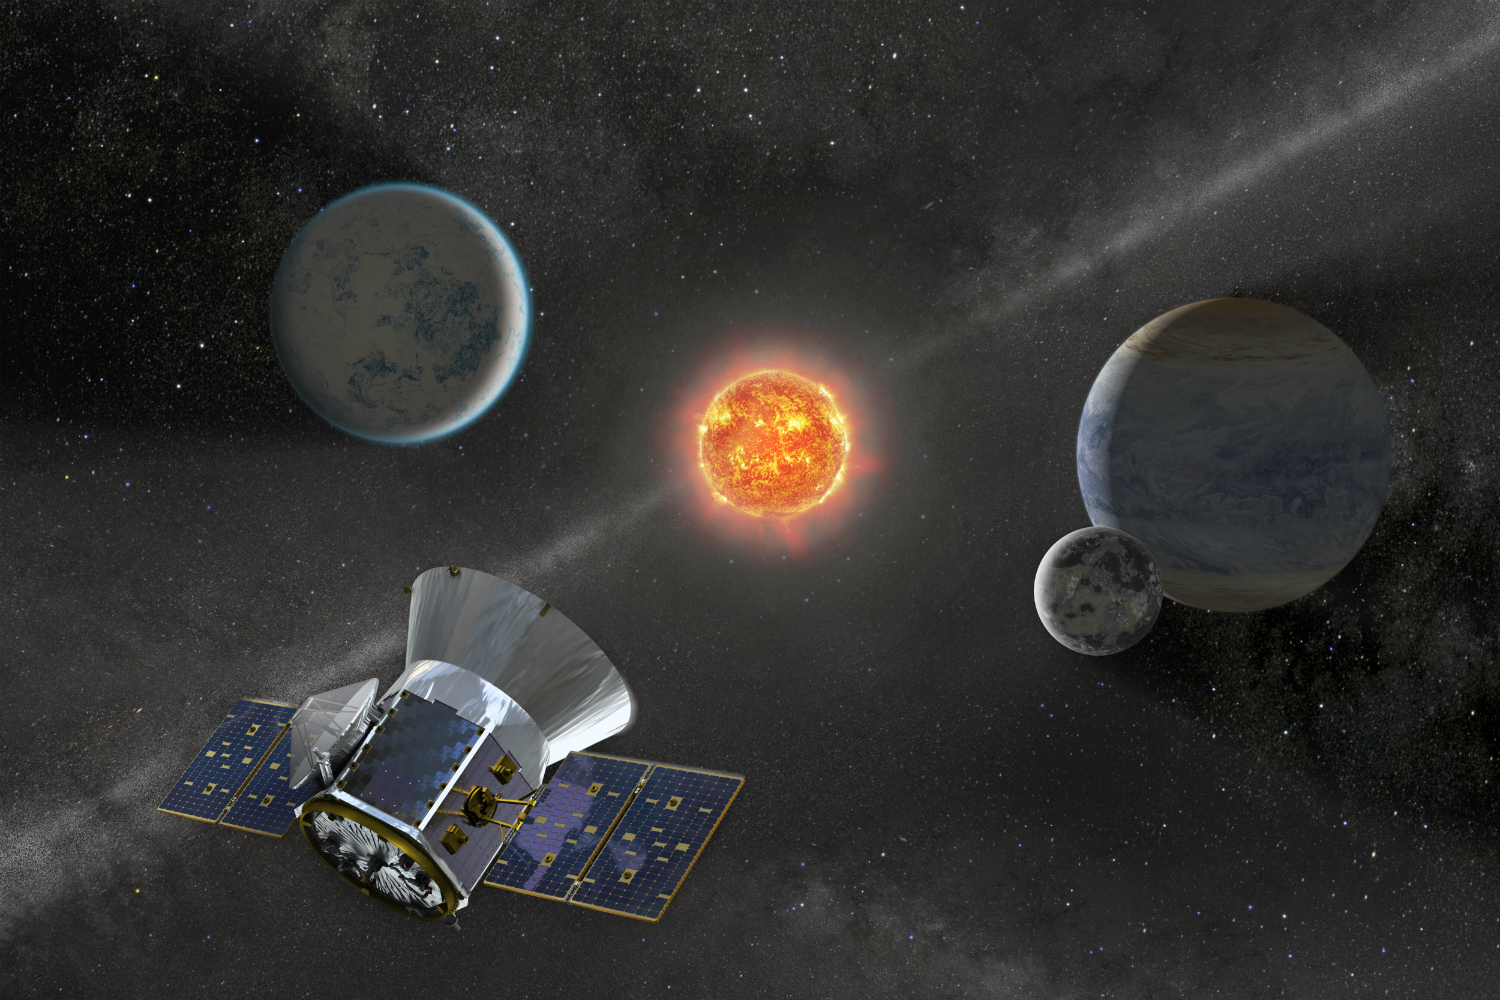 NASA’s Transiting Exoplanet Survey Satellite